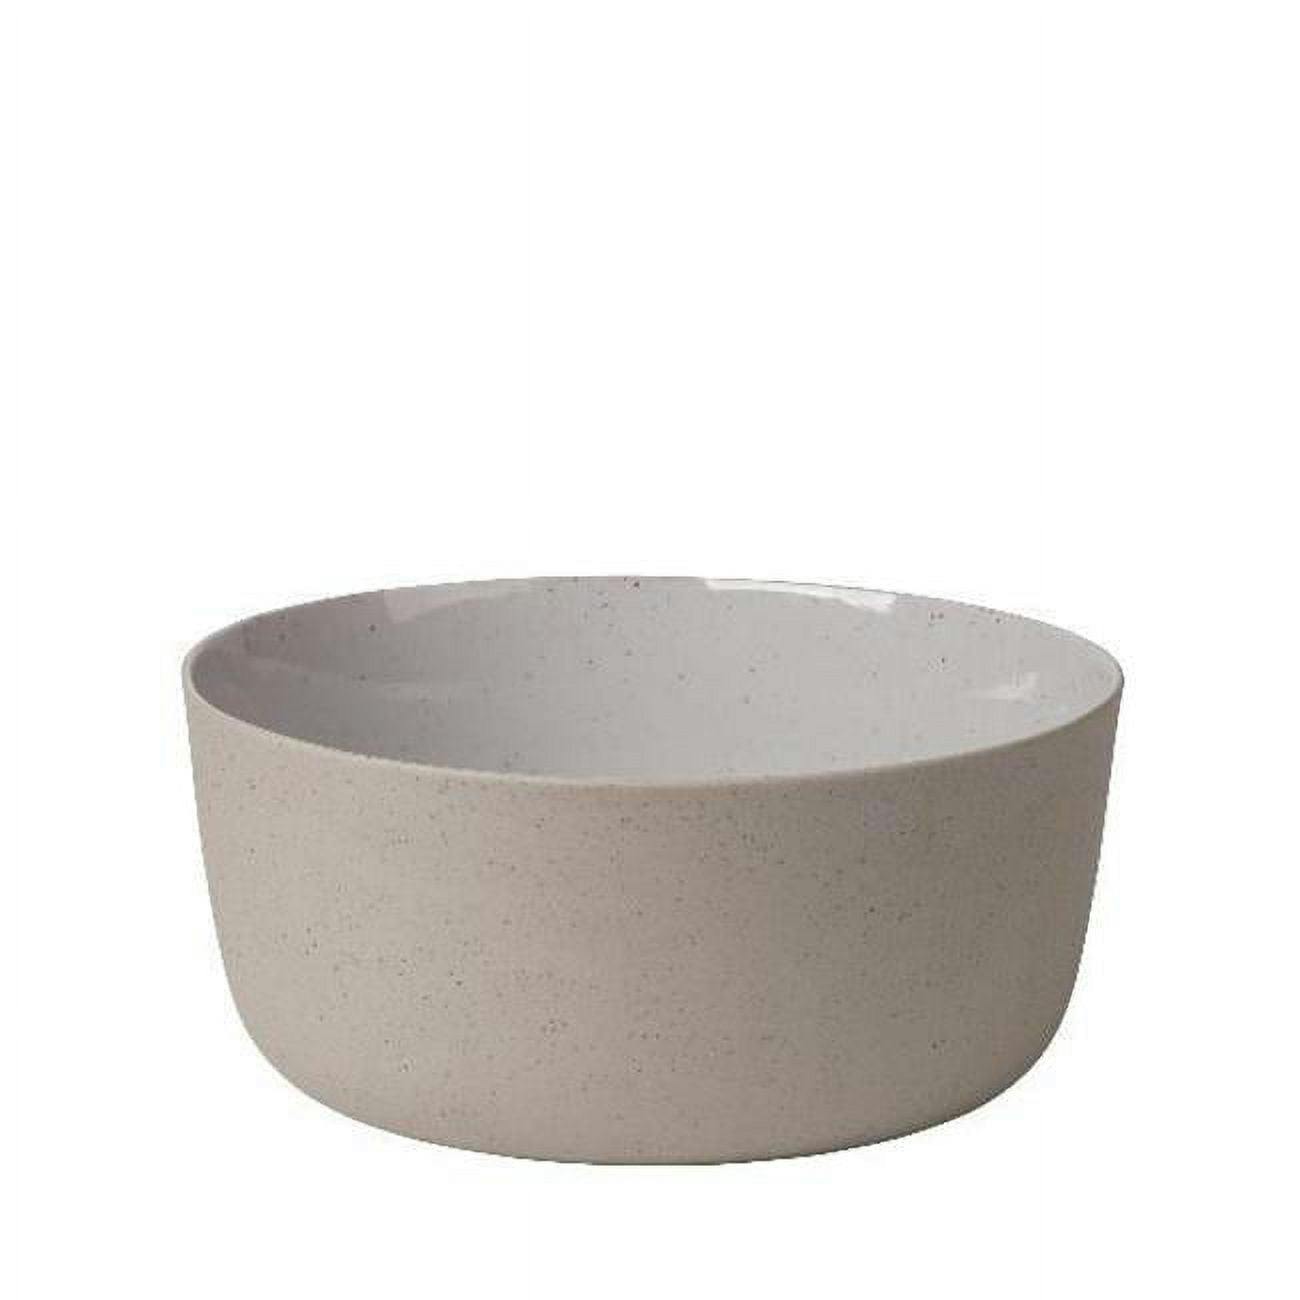 SABLO Stoneware Serving Bowl